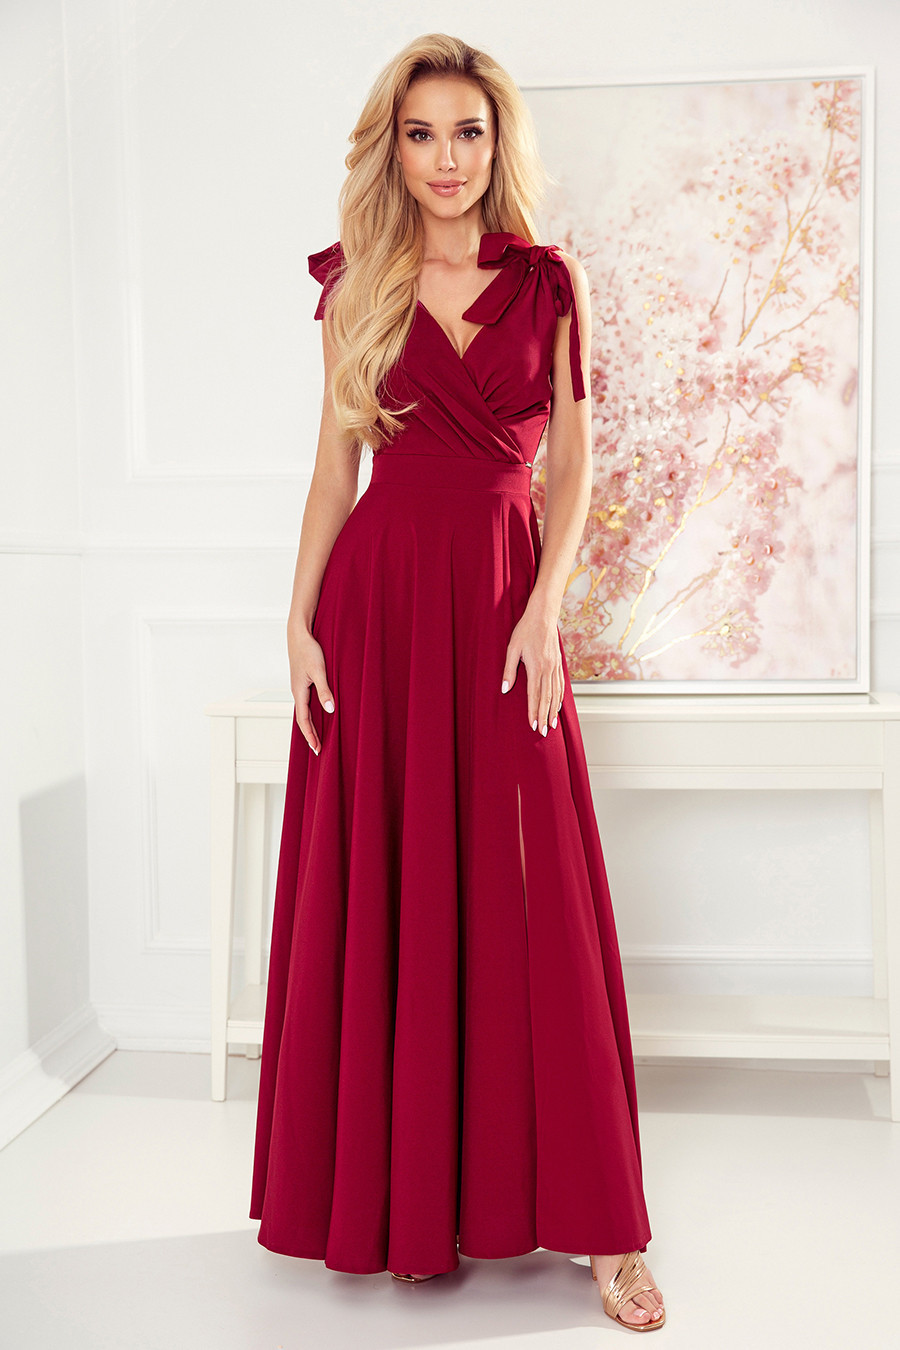 ELENA - Dlouhé dámské šaty ve vínové bordó barvě s výstřihem a zavazováním na ramenou 405-1 S